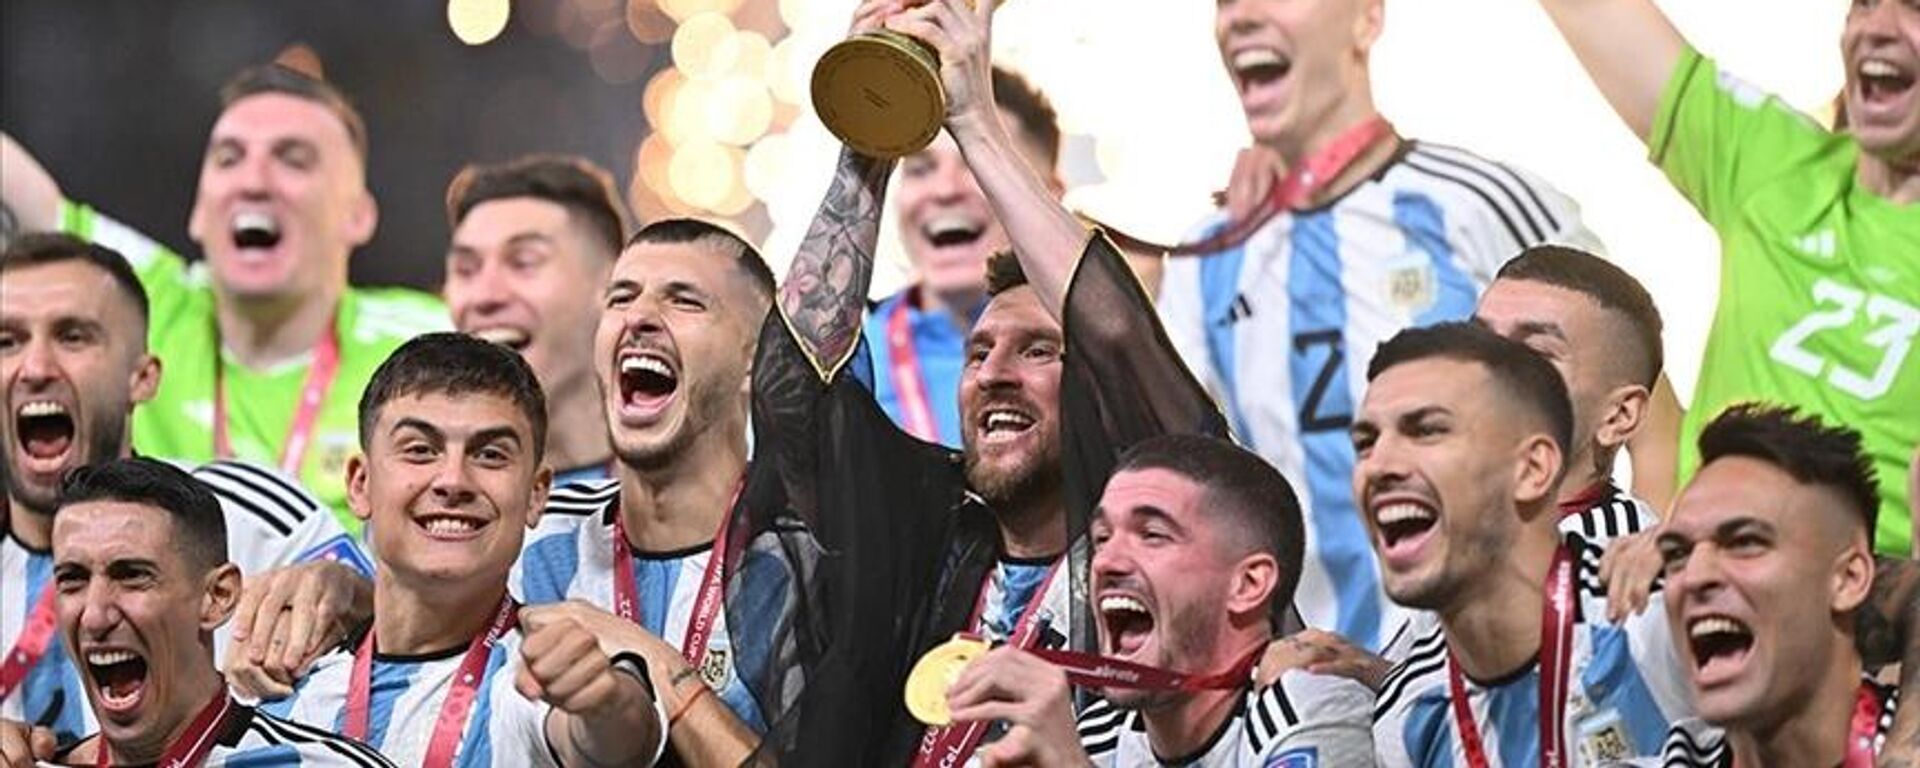 Katar Emiri Şeyh Temim bin Hamed el Sani'nin giydirdiği bişt denilen cübbeyle Dünya Kupa'sını kaldıran Lionel Messi'nin etrafında zafer kutlaması yapan Arjantin milli takımı  - Sputnik Türkiye, 1920, 23.12.2022